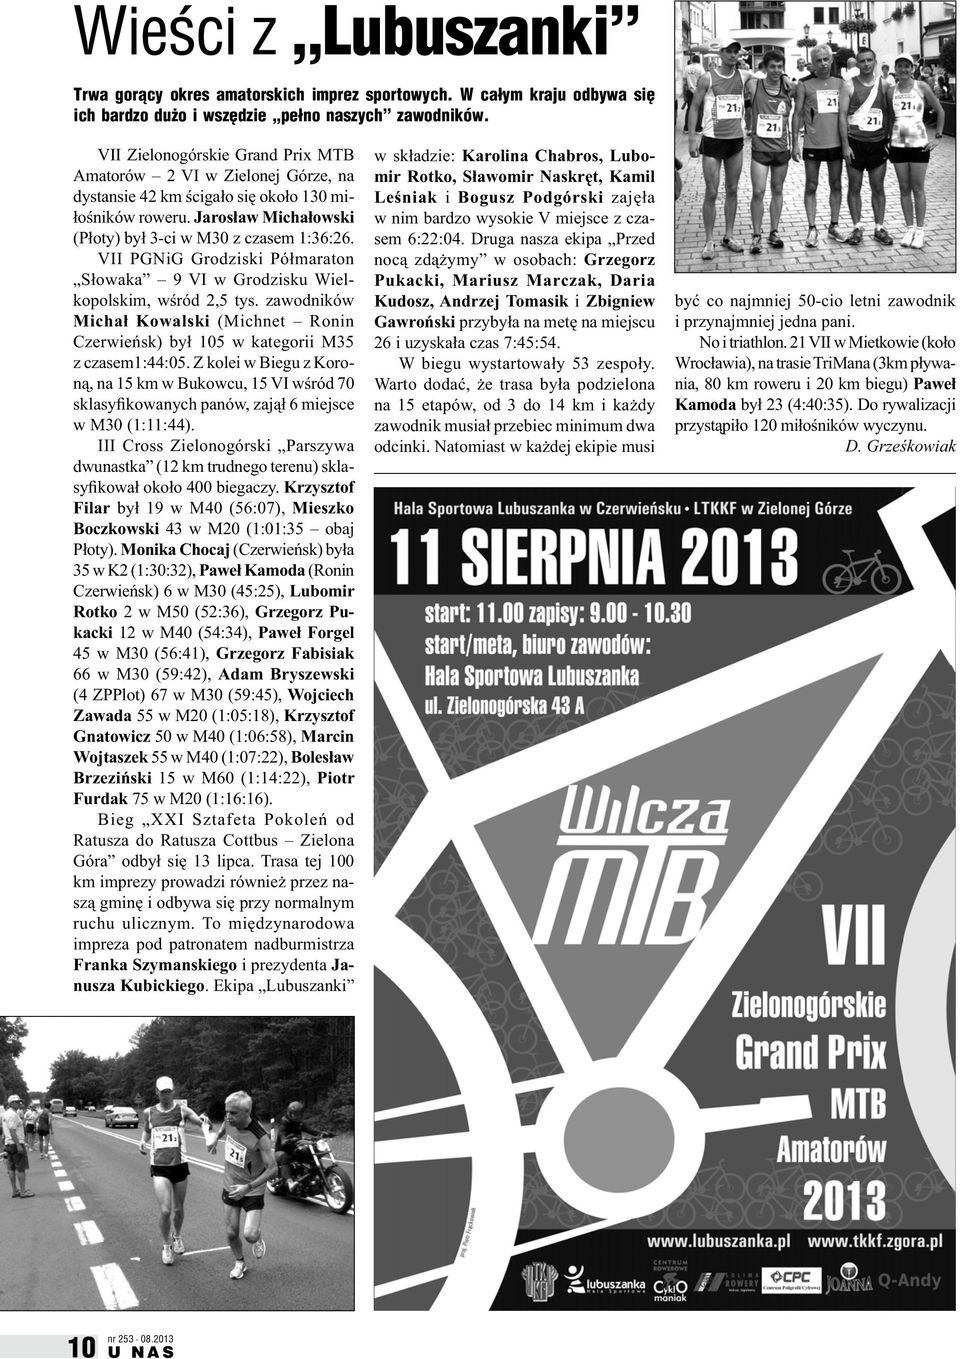 VII PGNiG Grodziski Półmaraton Słowaka 9 VI w Grodzisku Wielkopolskim, wśród 2,5 tys. zawodników Michał Kowalski (Michnet Ronin Czerwieńsk) był 105 w kategorii M35 z czasem1:44:05.